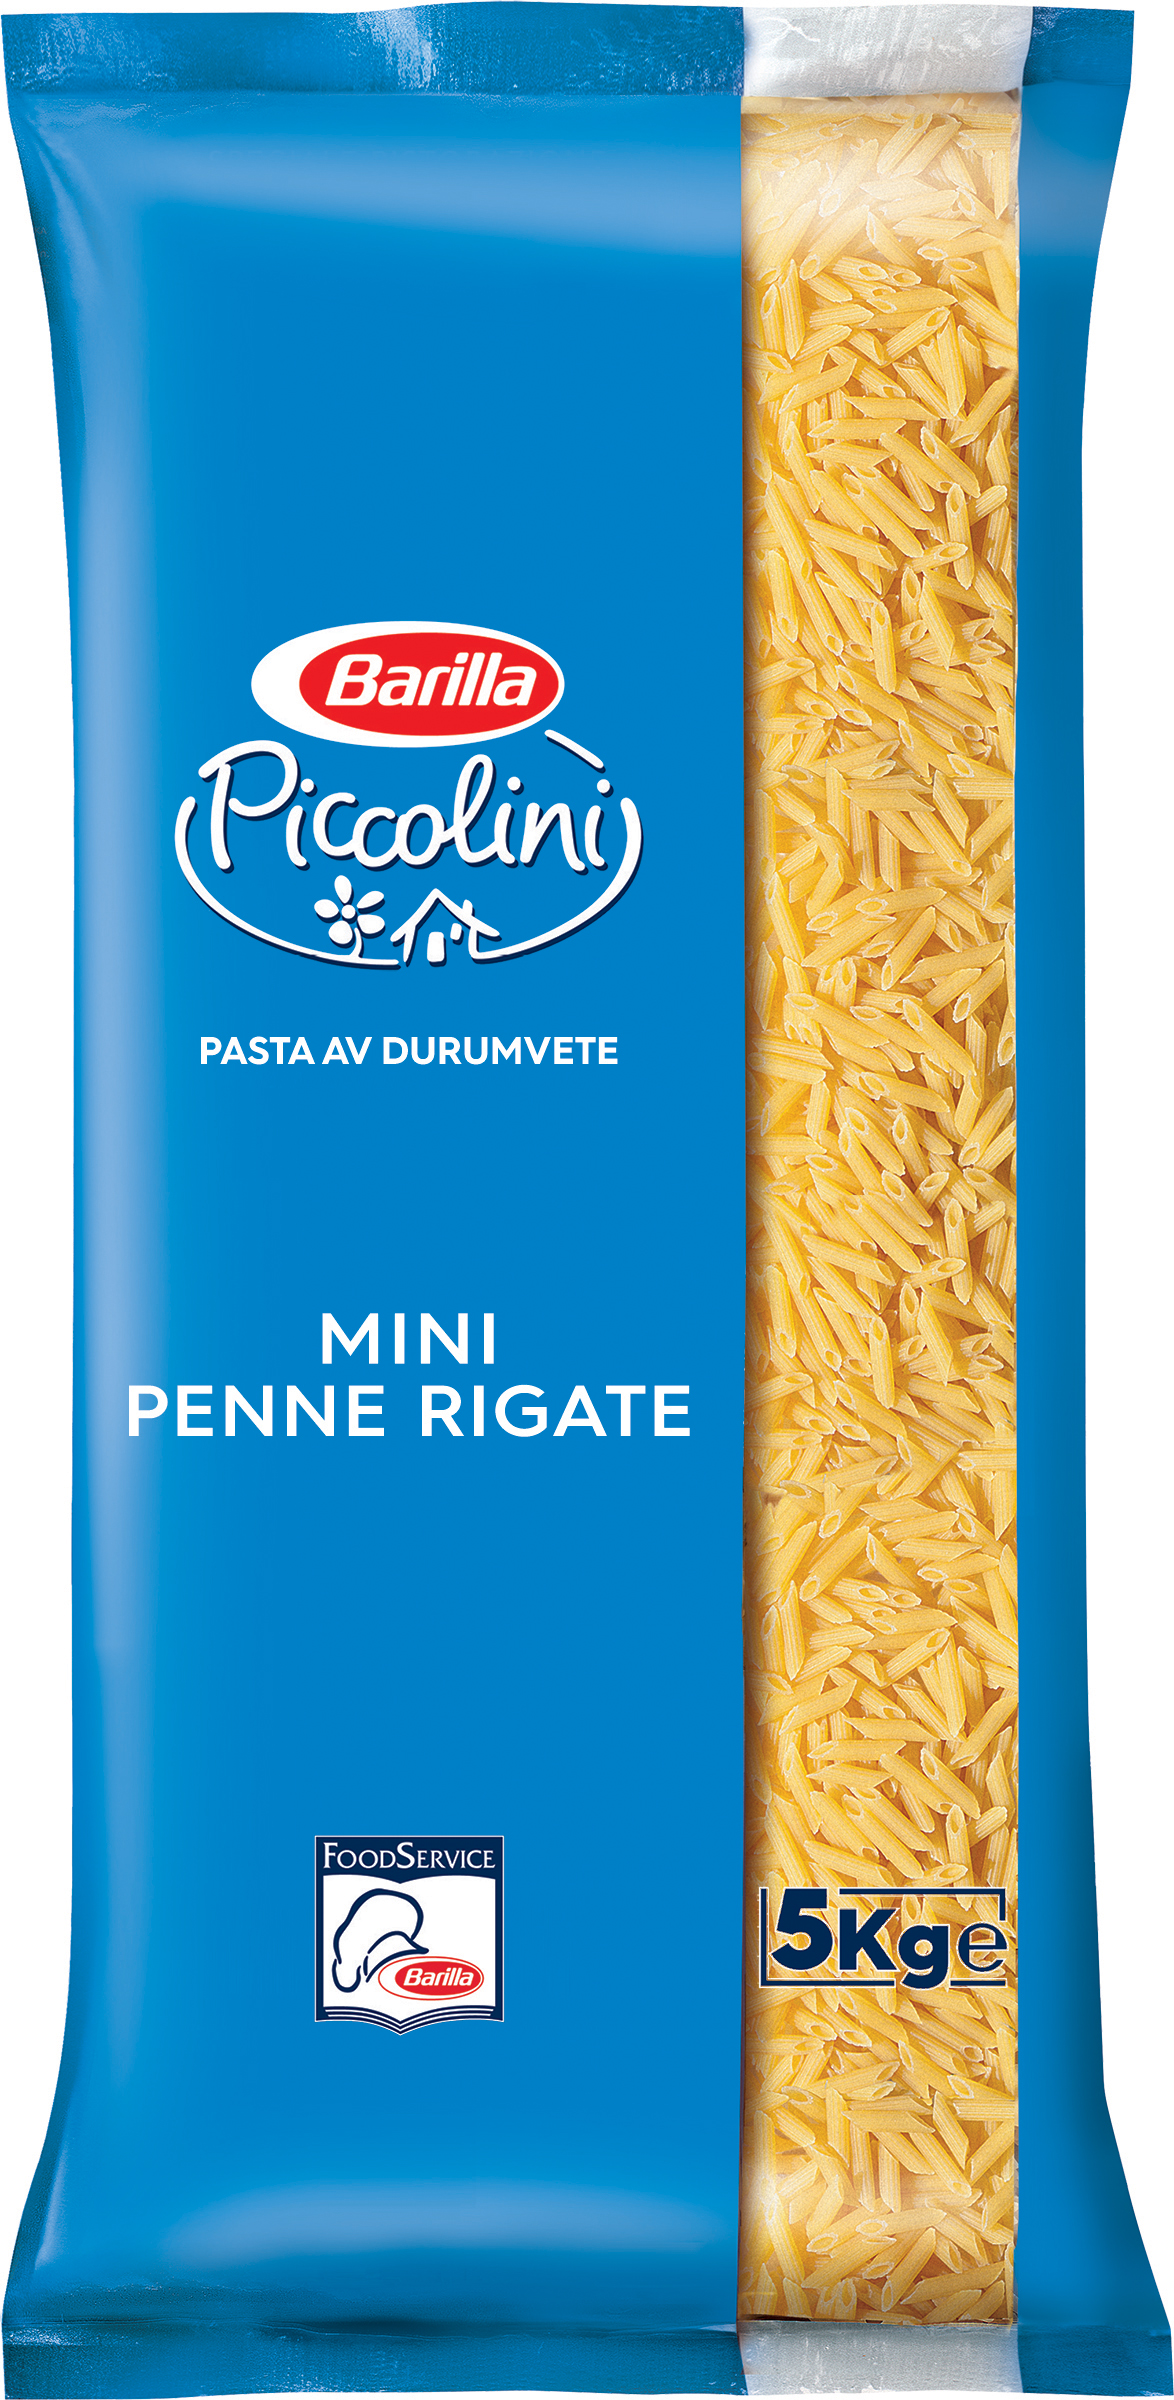 Barilla Mini penne rigate Reviews